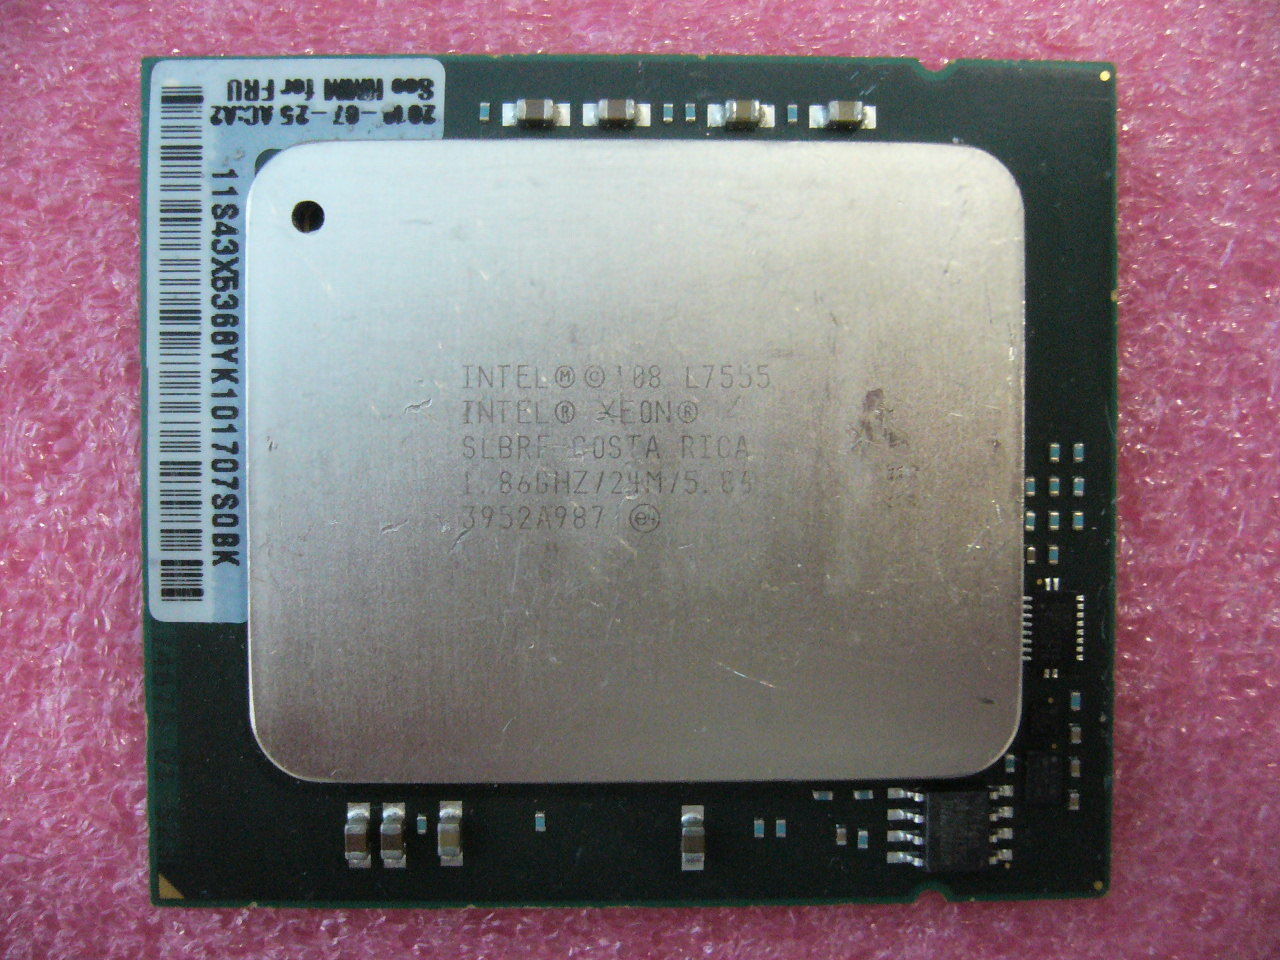 QTY 1x INTEL Eight-Cores CPU L7555 1.86GHZ/24MB 5.86GT/s LGA1567 SLBRF TDP 95W - zum Schließen ins Bild klicken